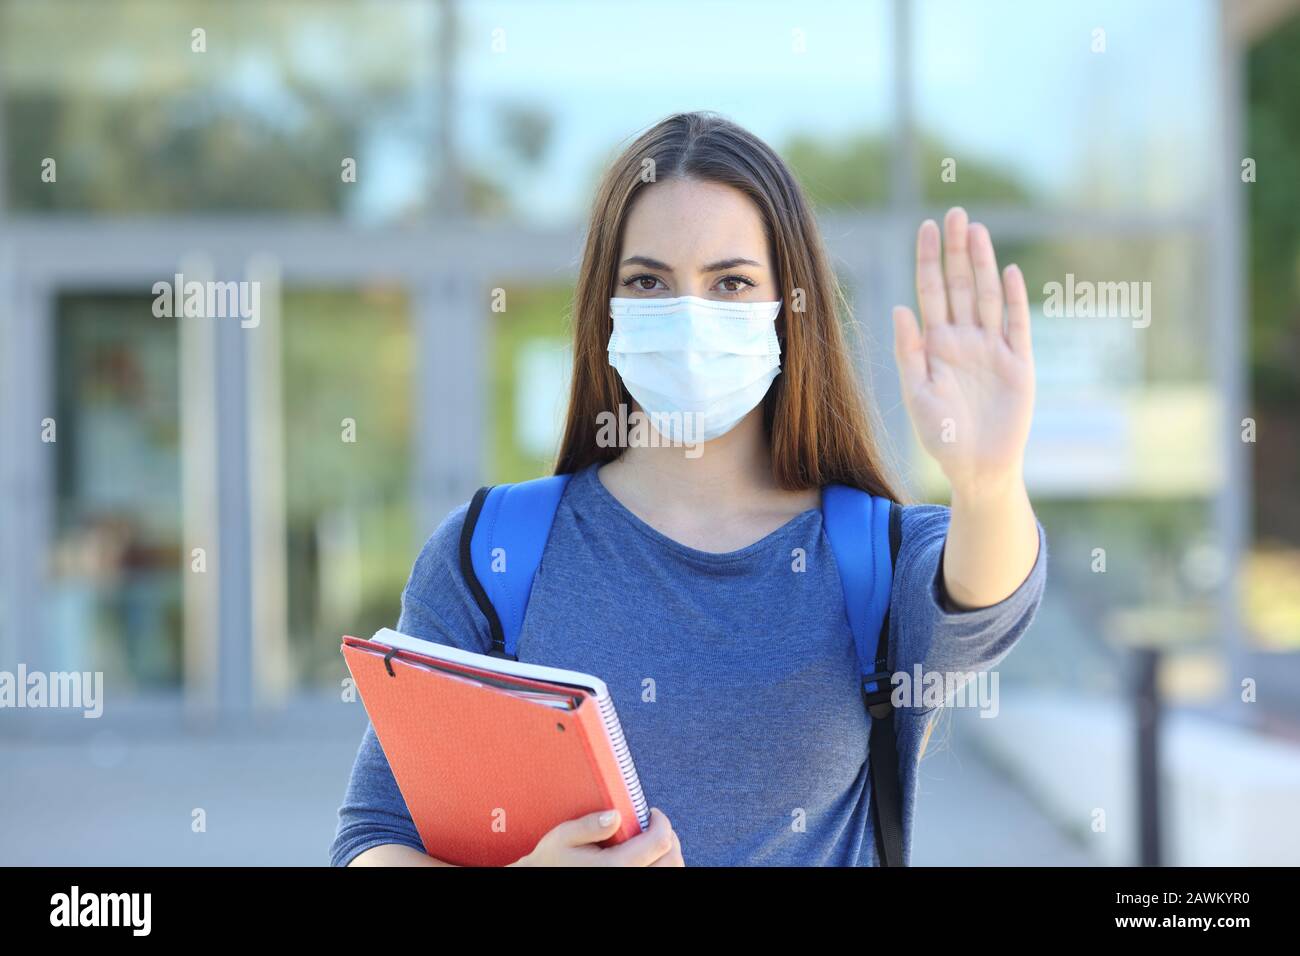 Vorderansicht eines Studenten mit einer Schutzmaske, die einen Halt in einem College-Campus trägt Stockfoto